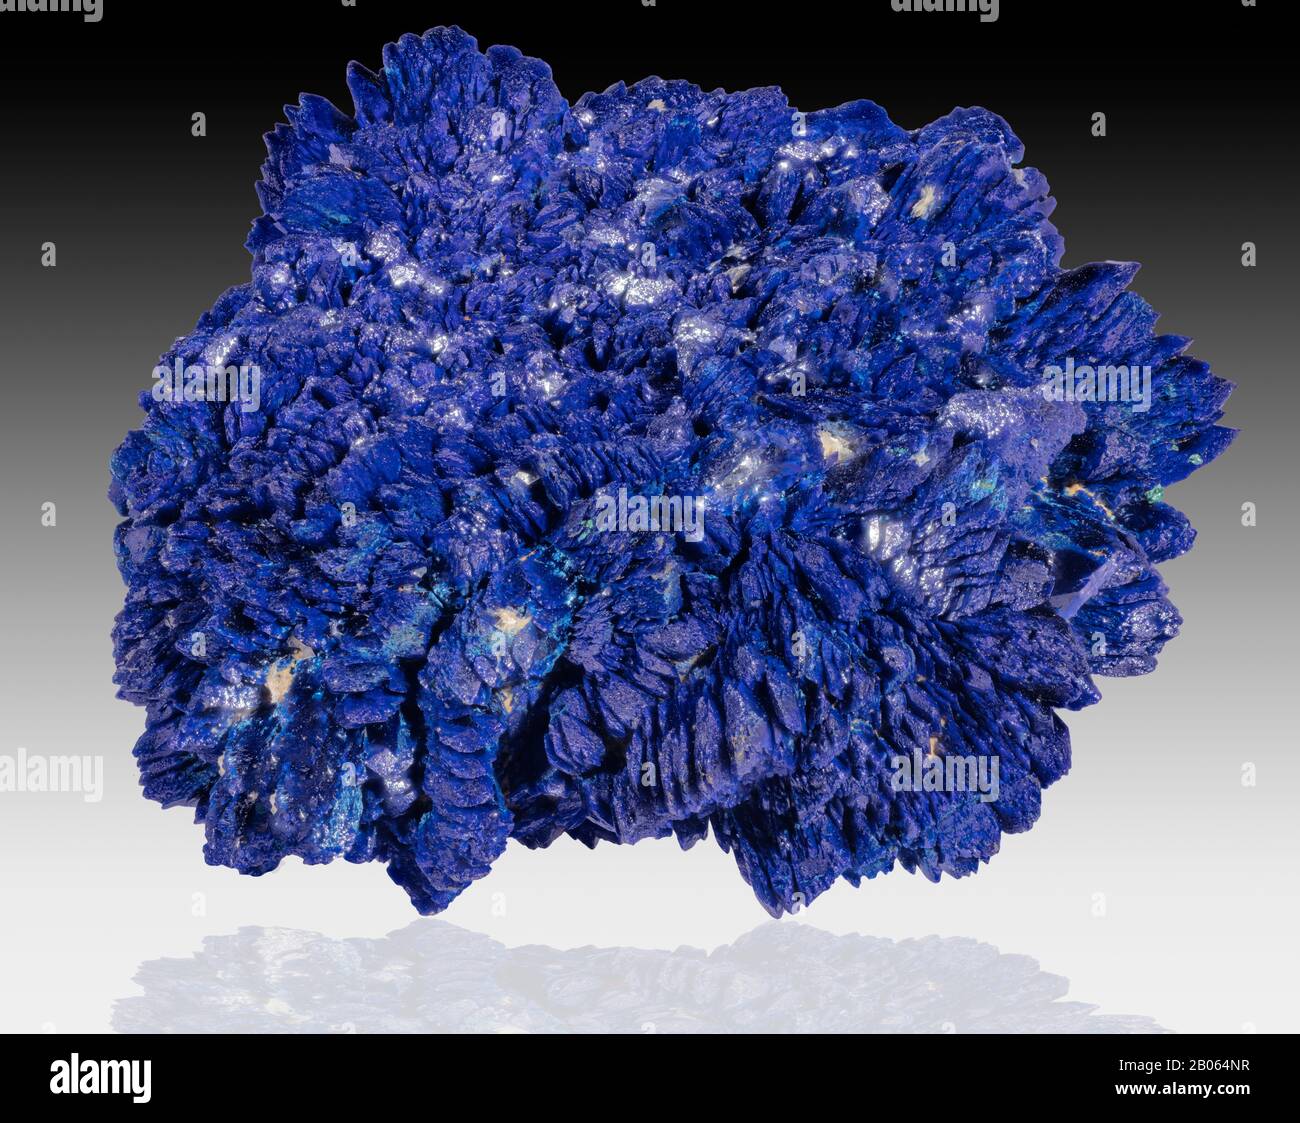 Azurit ist ein weicher Stein, der für seine tiefe "azurblaue" Farbe benannt ist. Es ist ein Kupfercarbonatmineral, das in den oberen oxidierten Teilen von Kupfererz fo gefunden wird Stockfoto